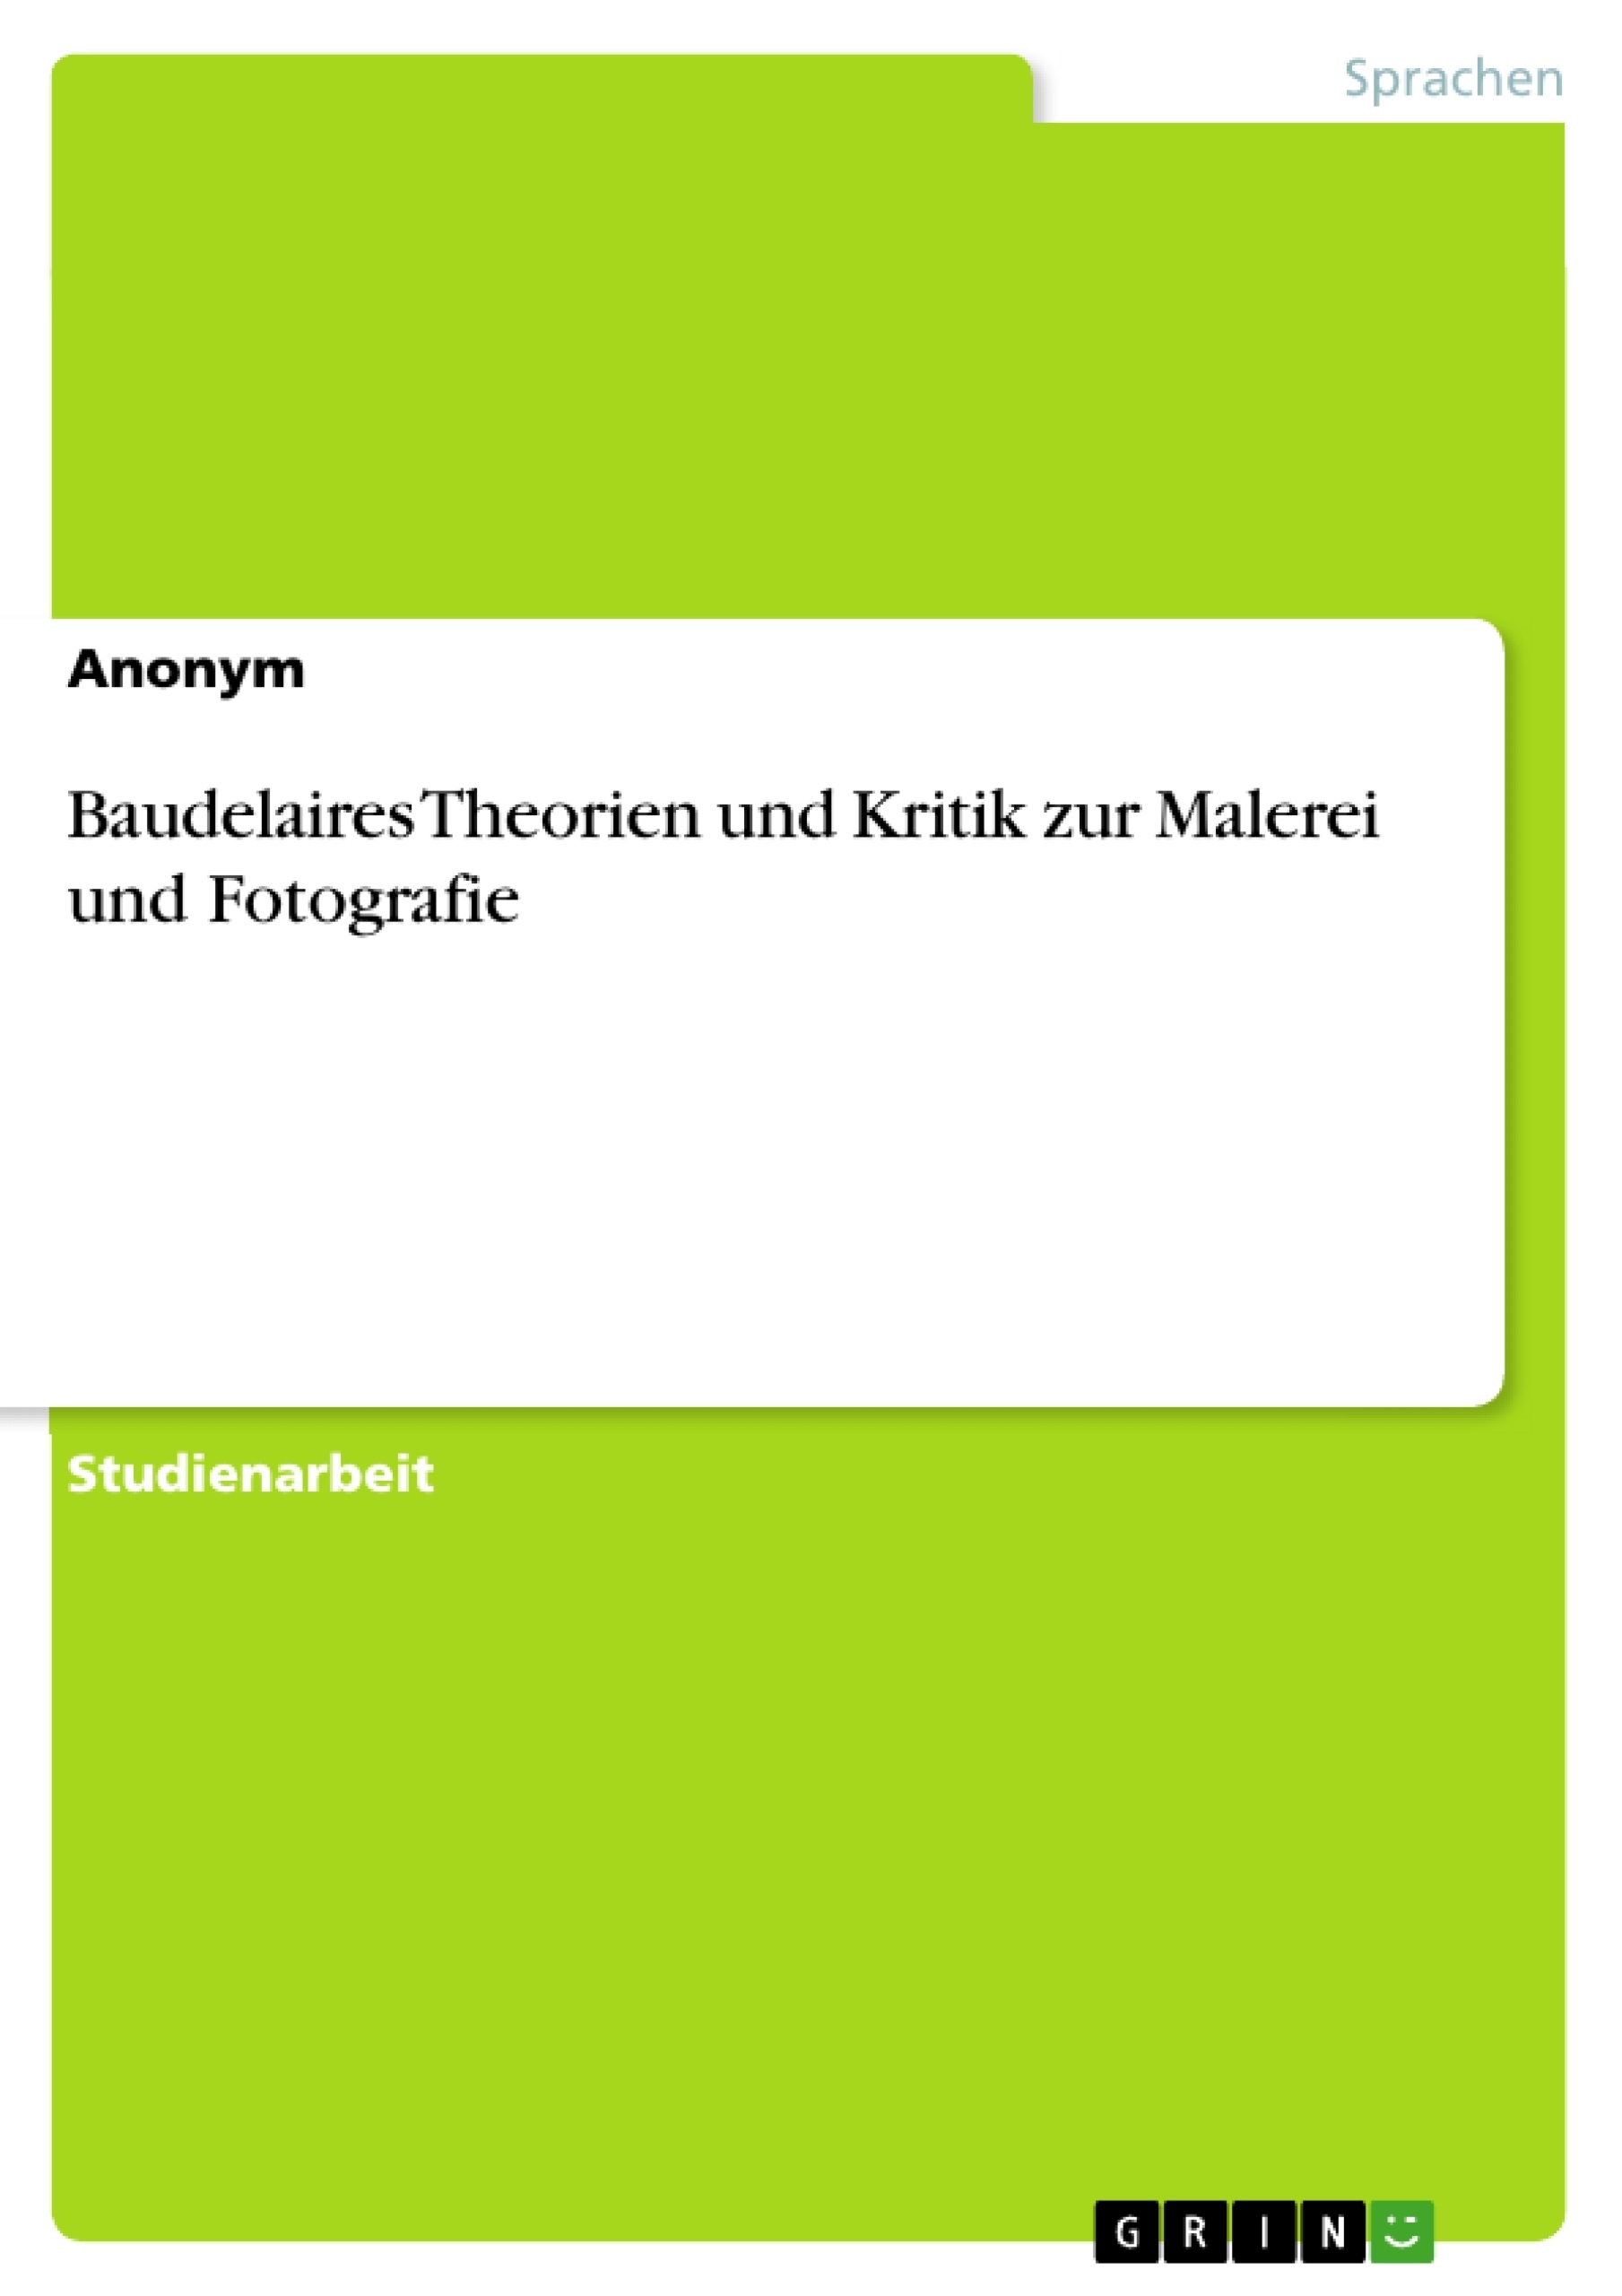 Title: Baudelaires Theorien und Kritik zur Malerei und Fotografie